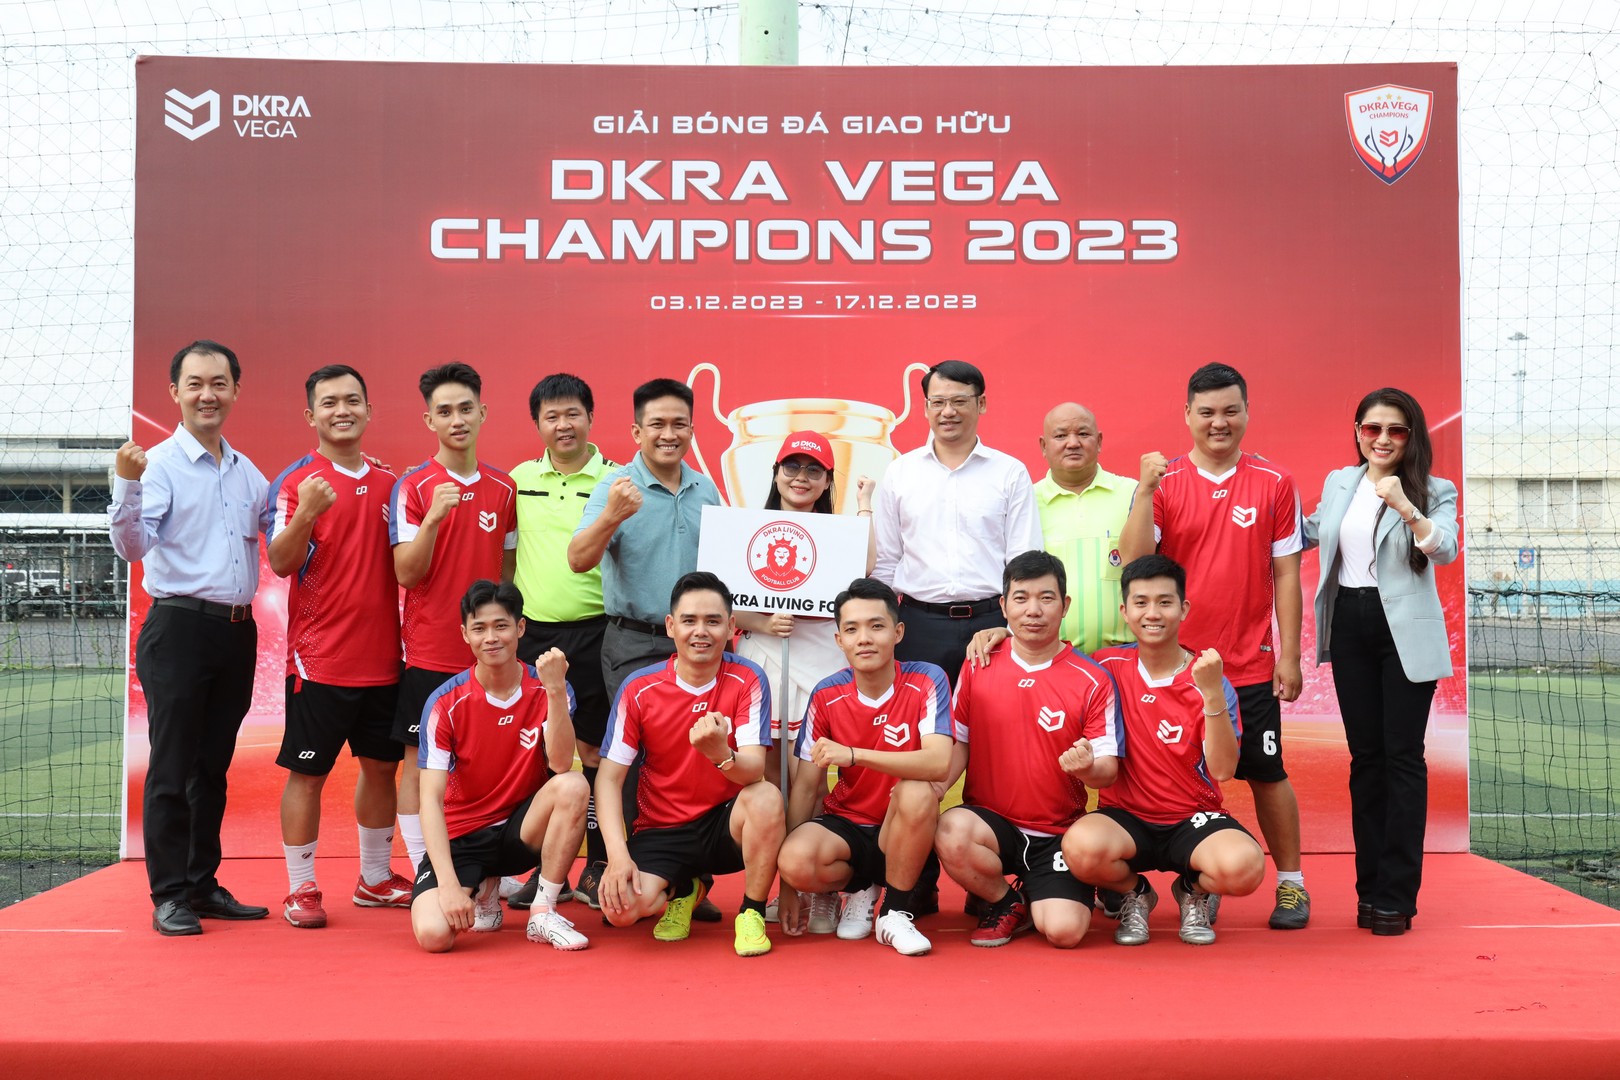 DKRA Living tham gia Giải bóng đá DKRA VEGA CHAMPIONS 2023